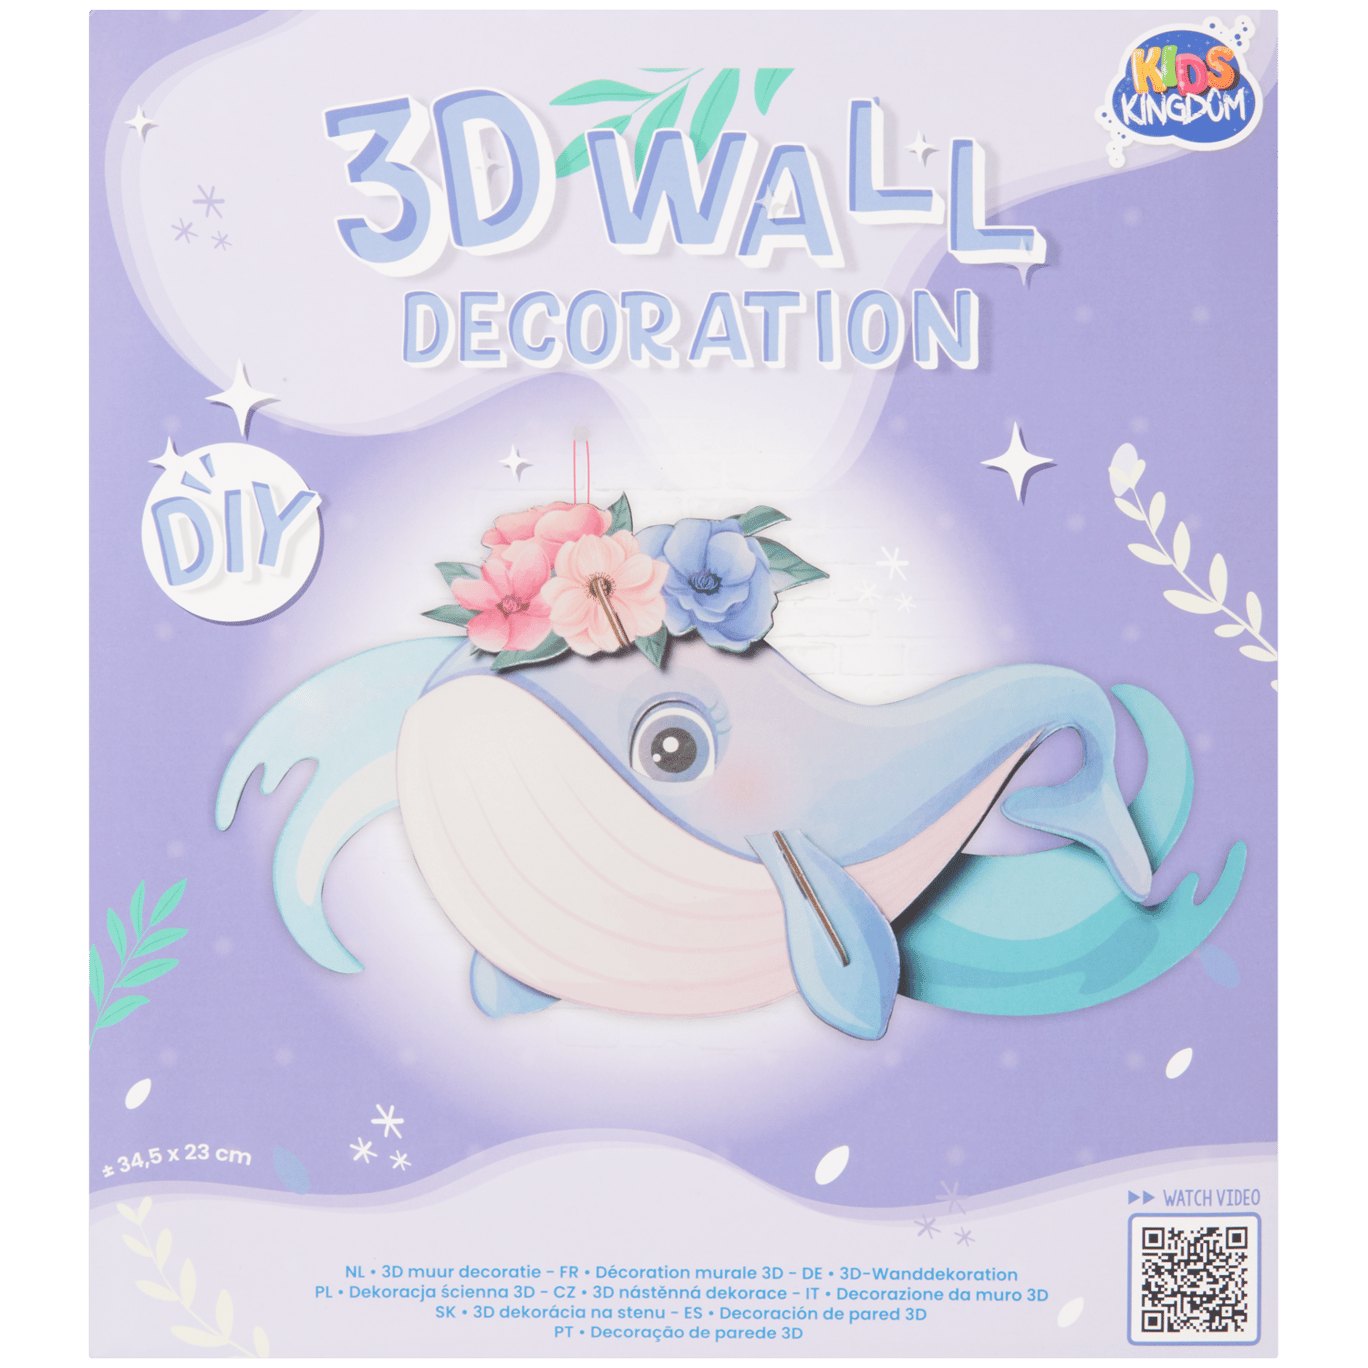 Crea le tue decorazioni da parete in 3D Kids Kingdom